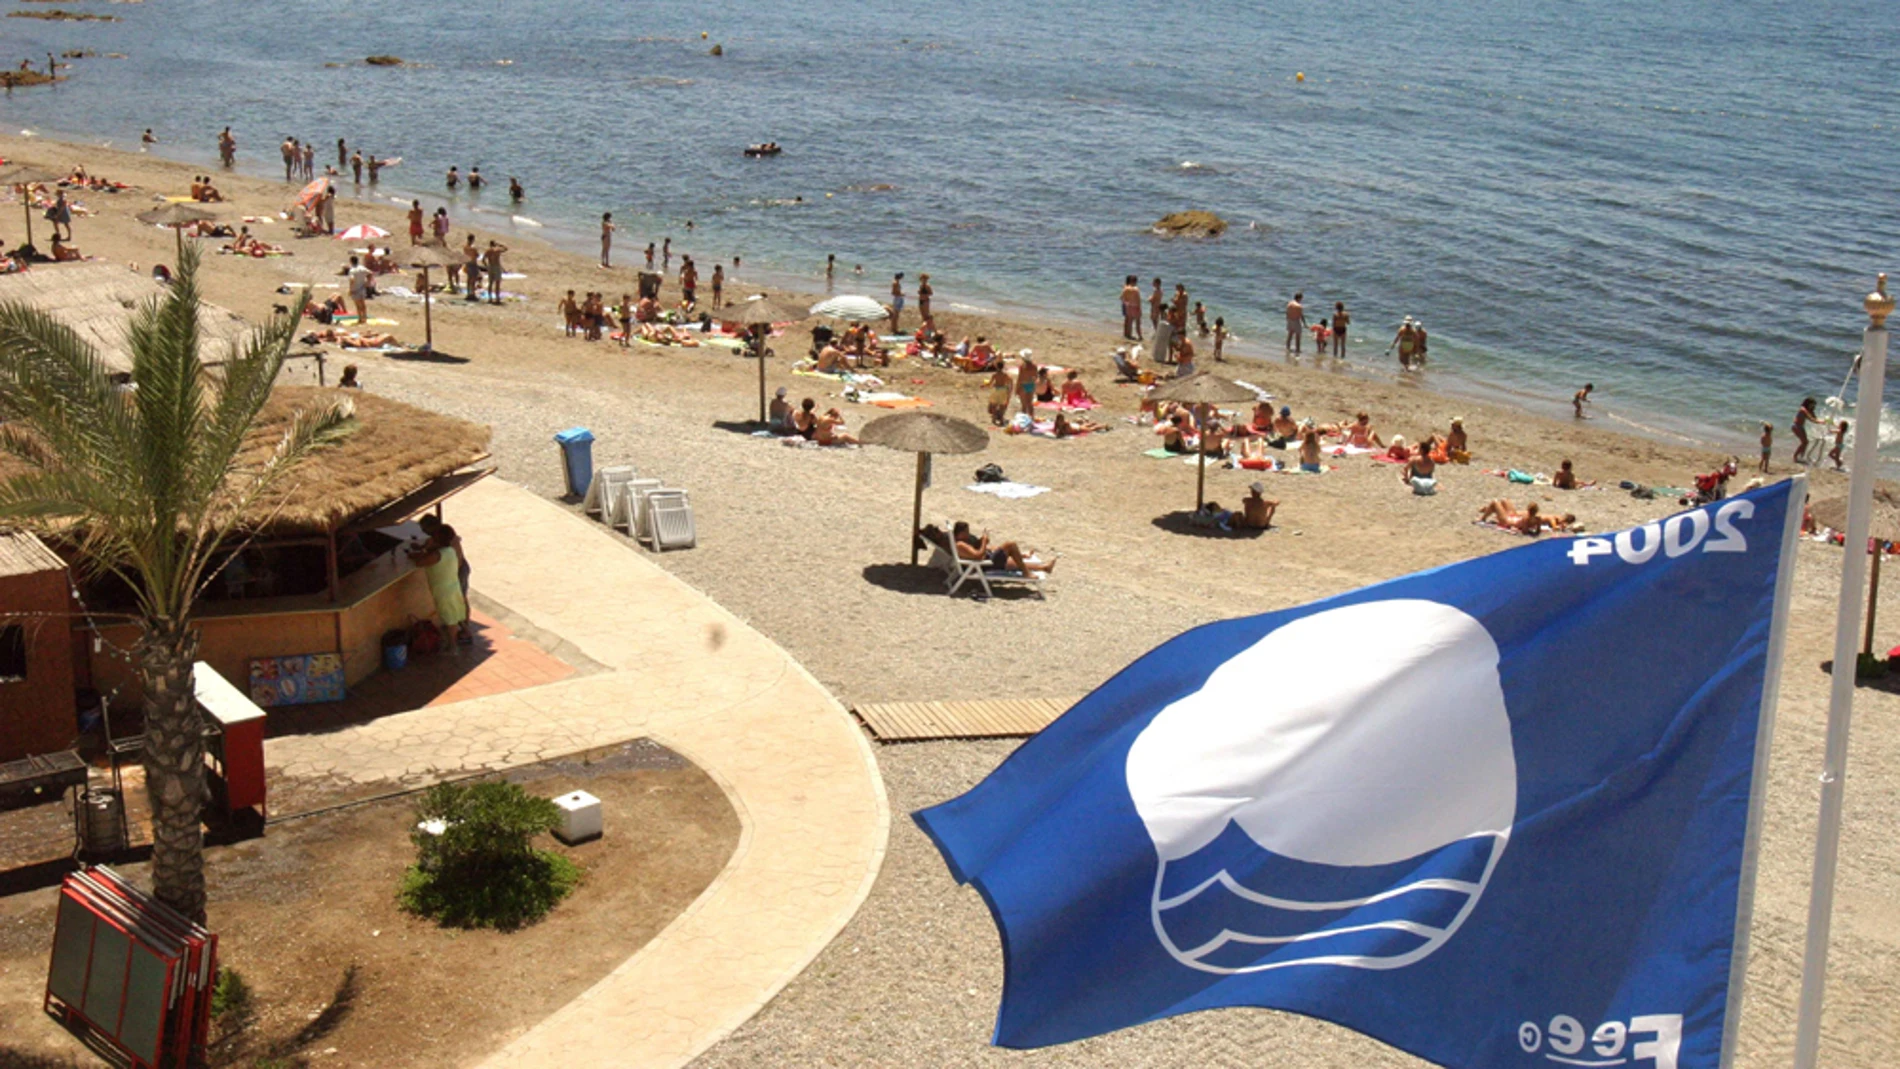 Vista de la playa de la Ribera en Ceuta, con la bandera azul en primer plano